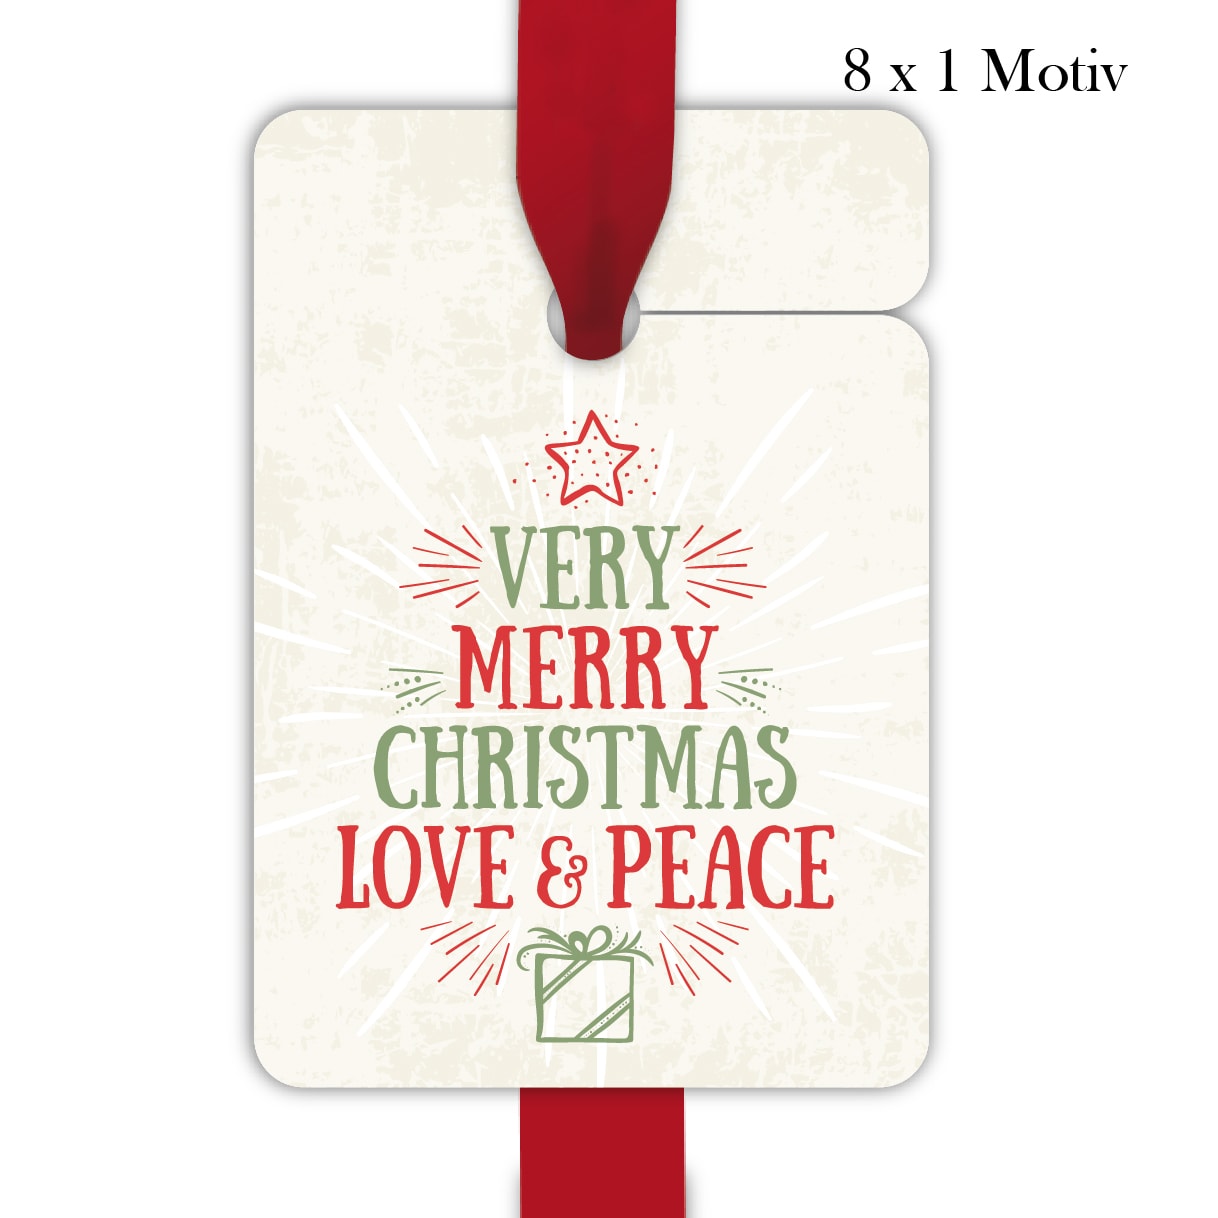 Kartenkaufrausch: Vintage Weihnachts Geschenkanhänger aus unserer Weihnachts Papeterie in beige